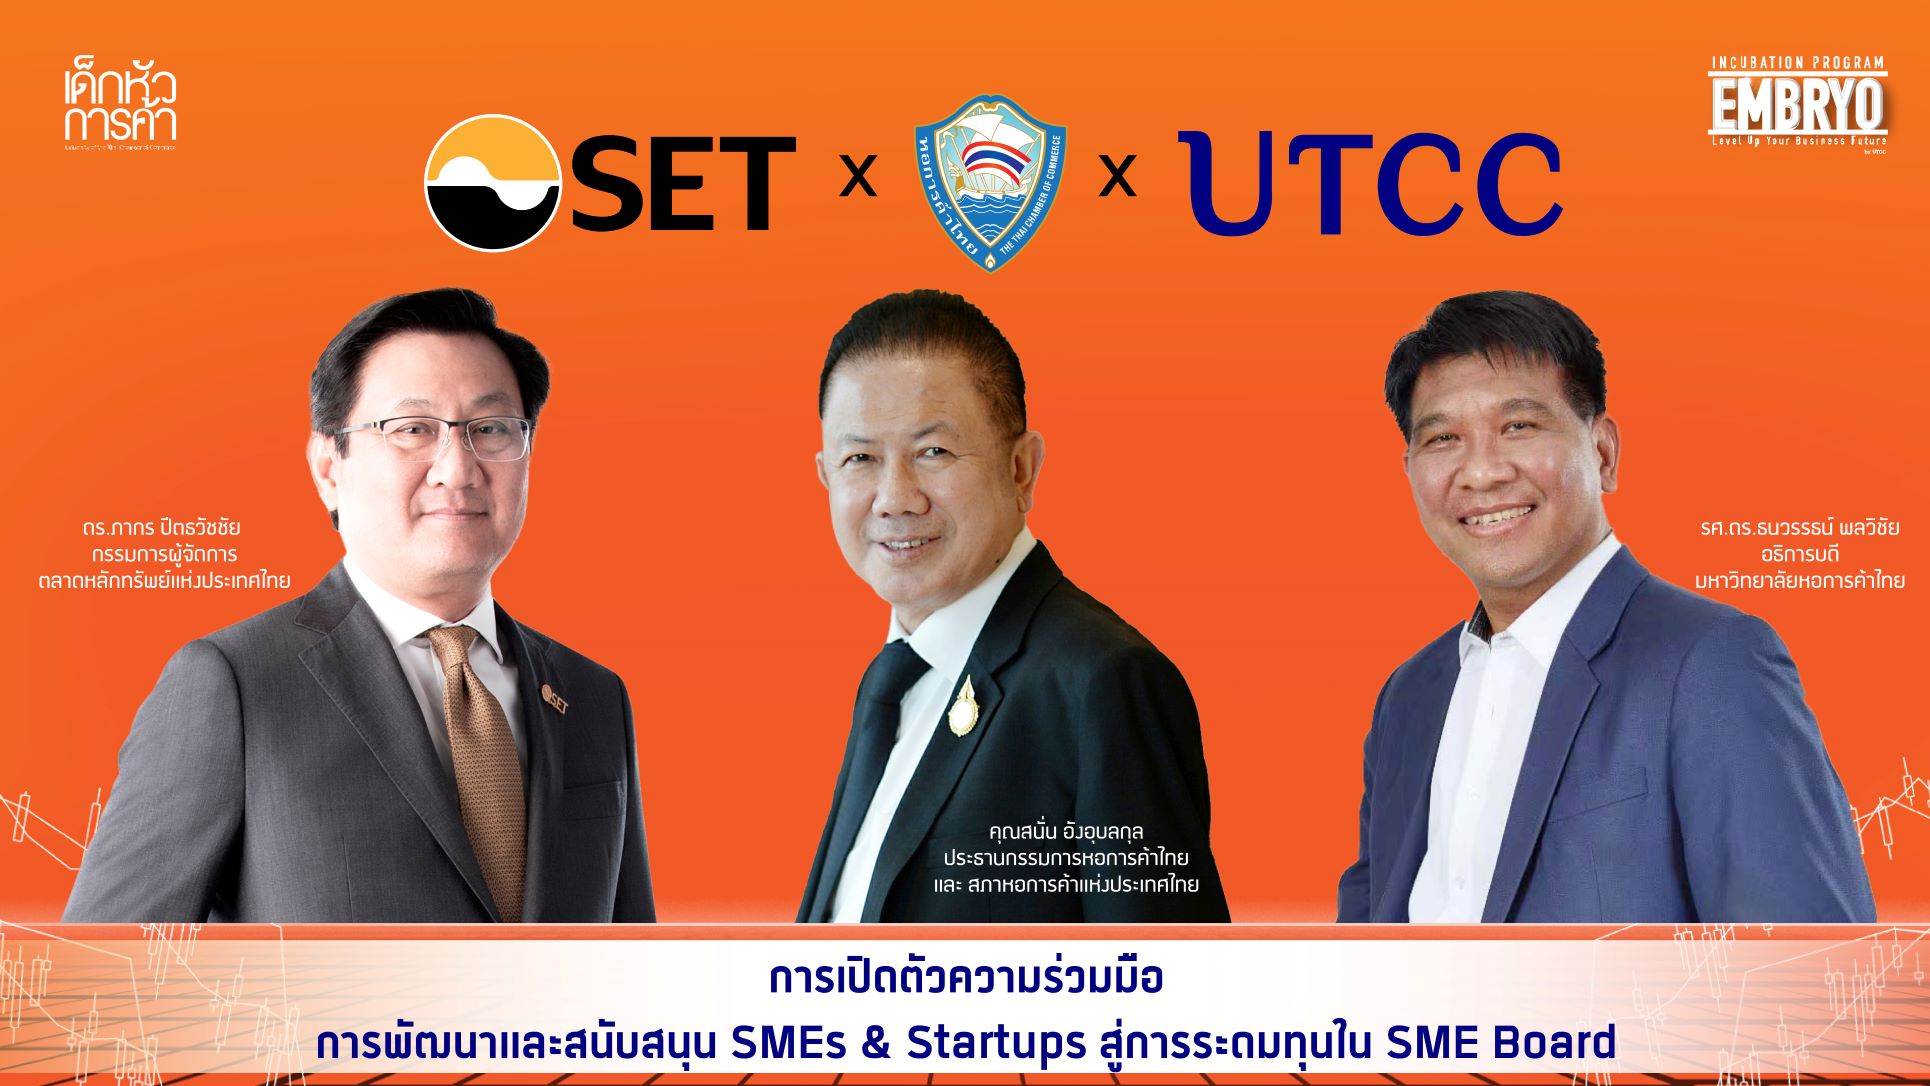 เปิดตัวความร่วมมือโครงการพัฒนาและสนับสนุนวิสาหกิจเริ่มต้น (Startups) และ วิสาหกิจขนาดกลางกลางและขนาดย่อม (SMEs) ตลาดหลักทรัพย์แห่งประเทศไทย หอการค้าไทย และมหาวิทยาลัยหอการค้าไทย